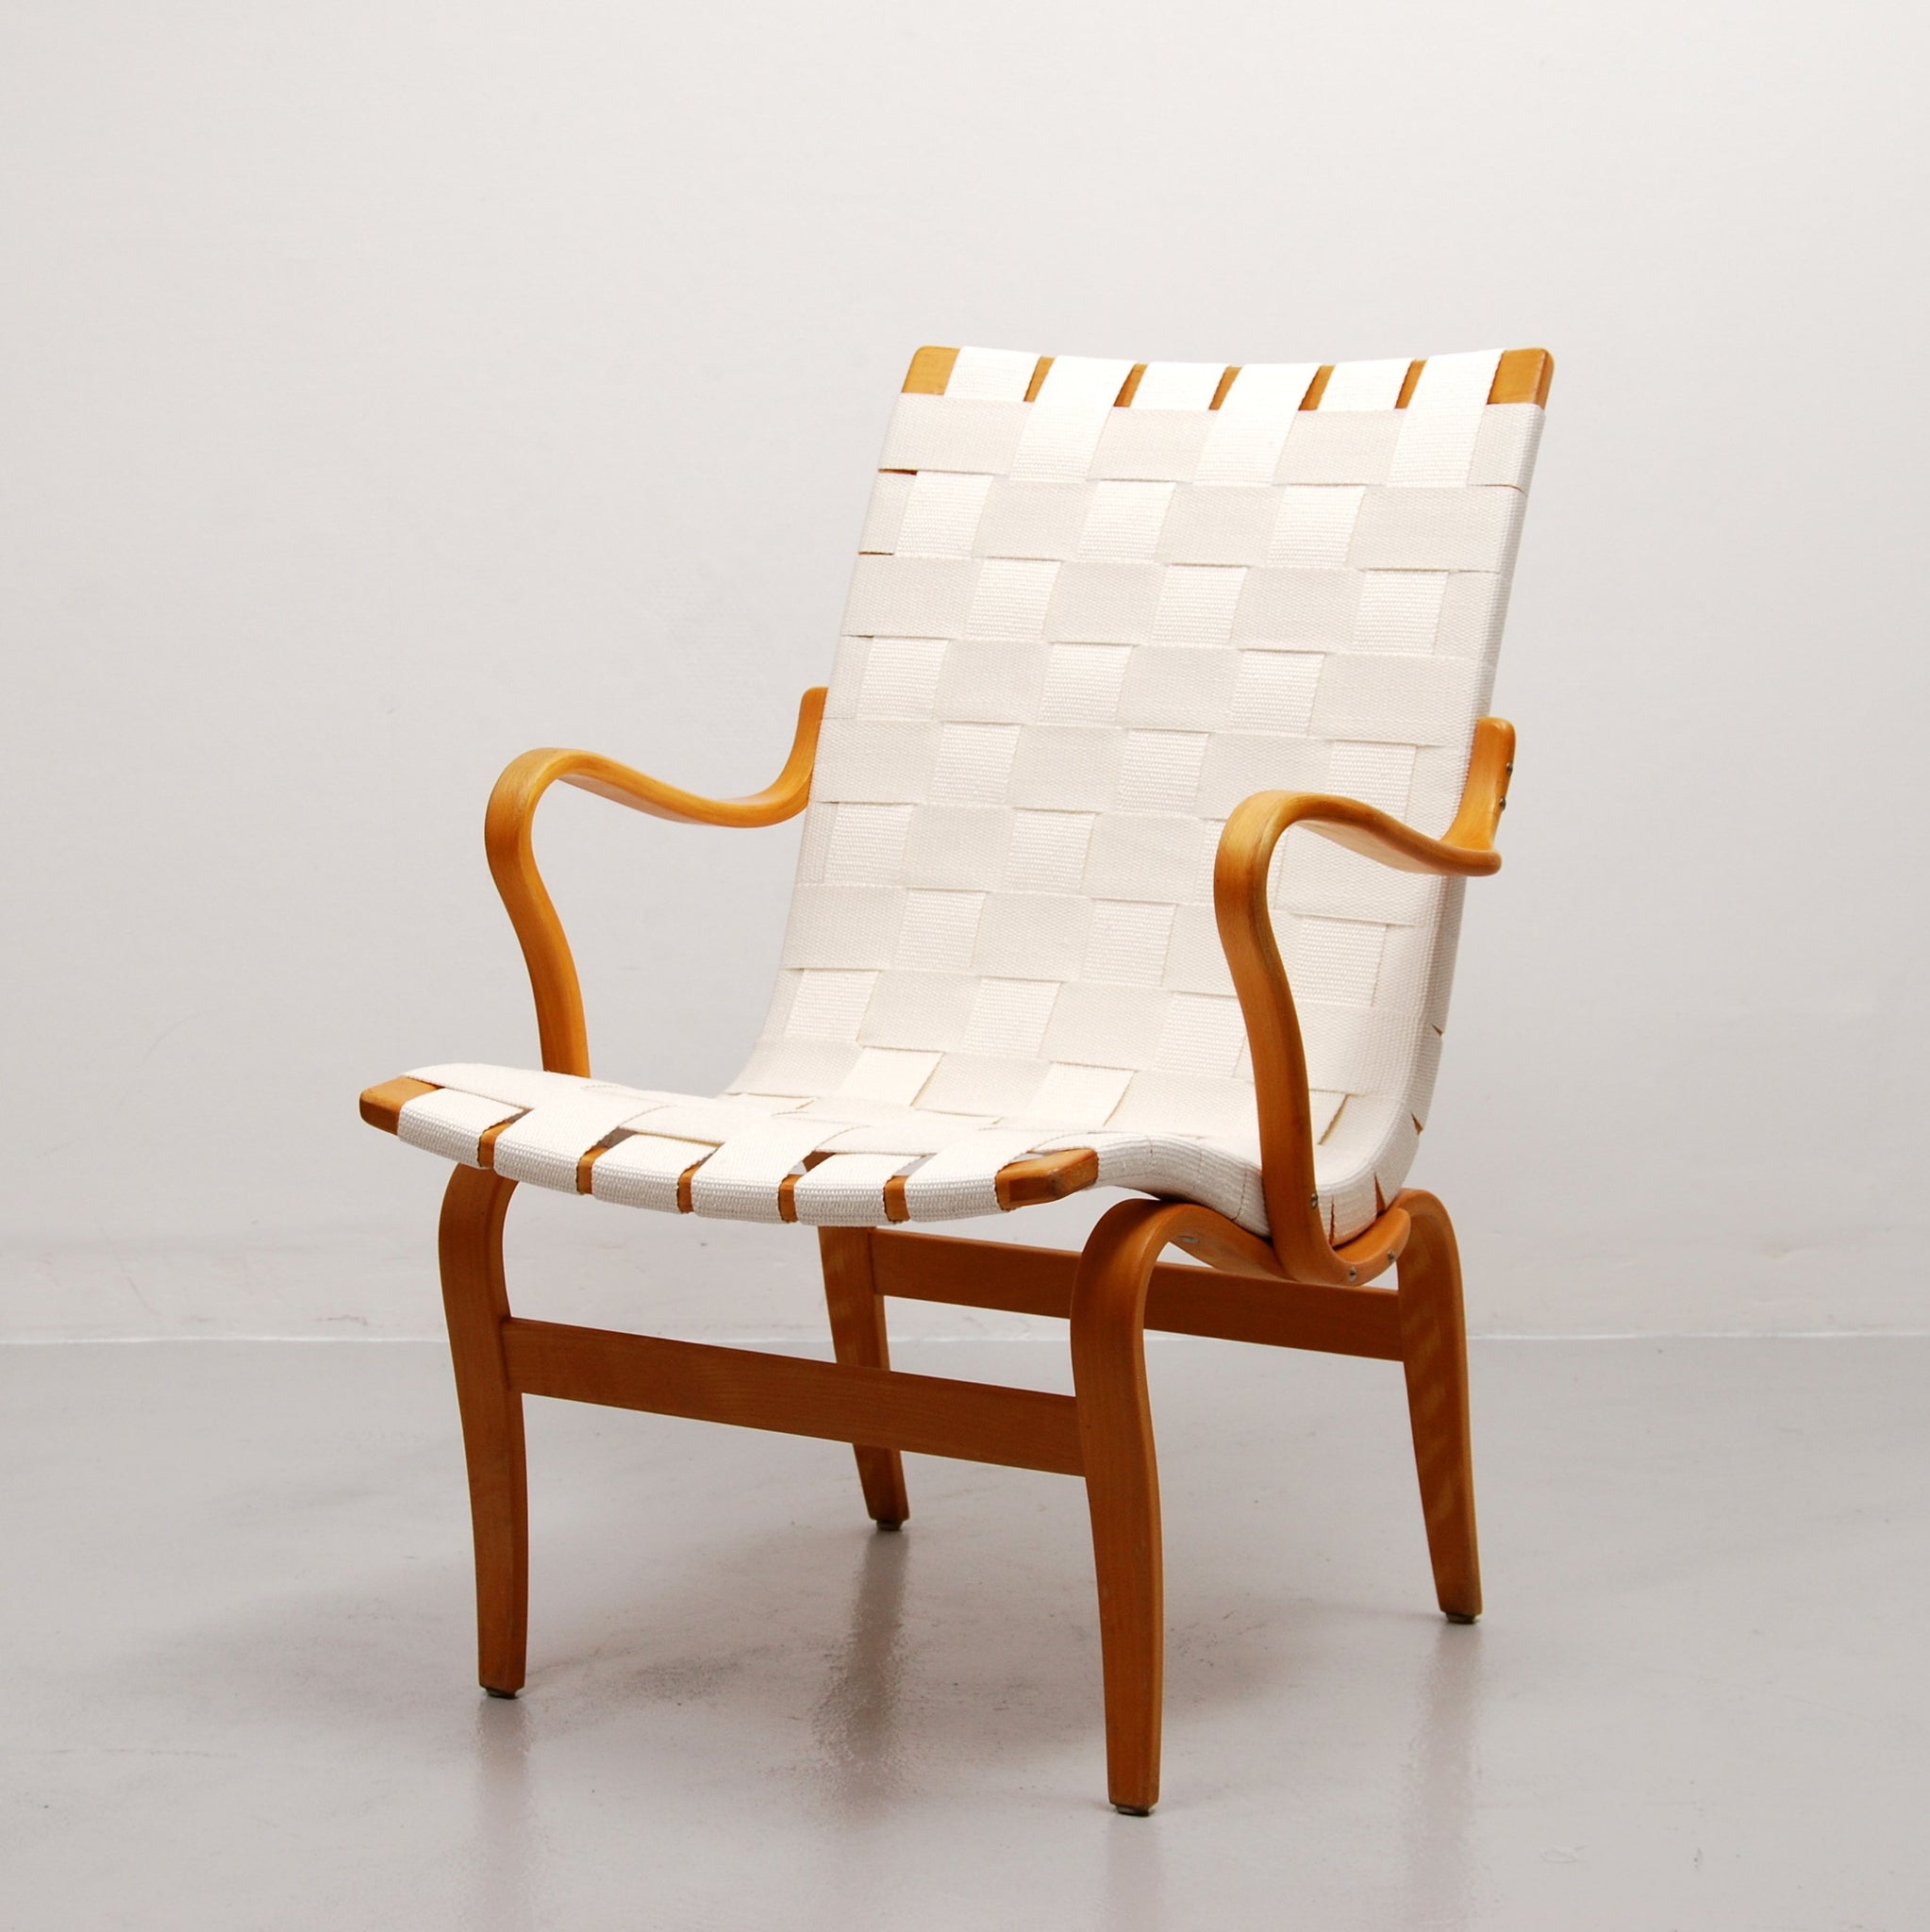 Eva Lounge Chair by Bruno Mathsson for Karl Mathsson